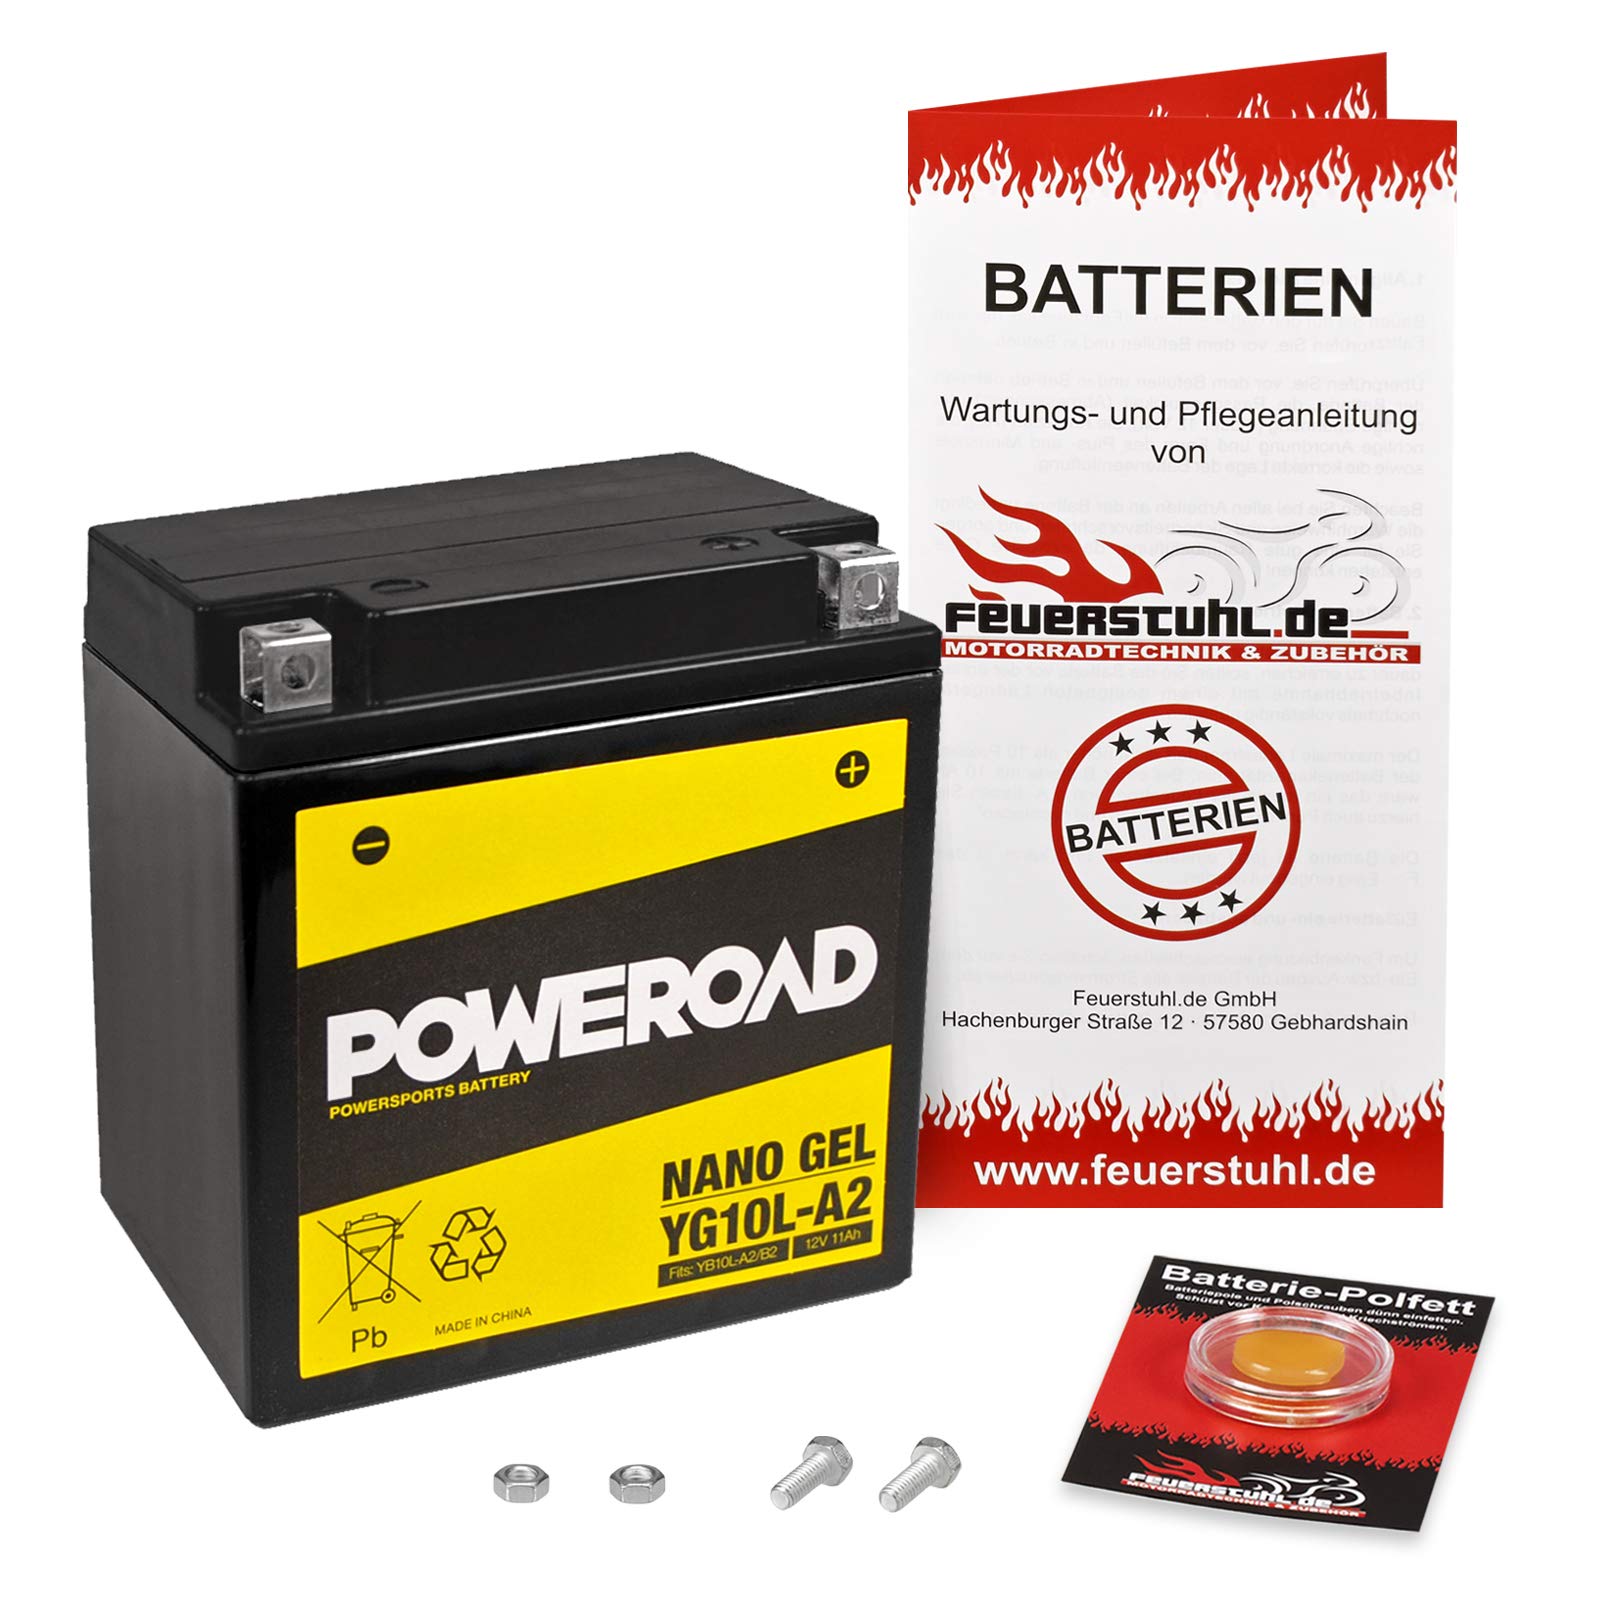 Gel-Batterie für Suzuki GN 250 (NJ42A) wartungsfrei, einbaufertig, startklar, inkl. 7,50€ Pfand von Feuerstuhl.de GmbH